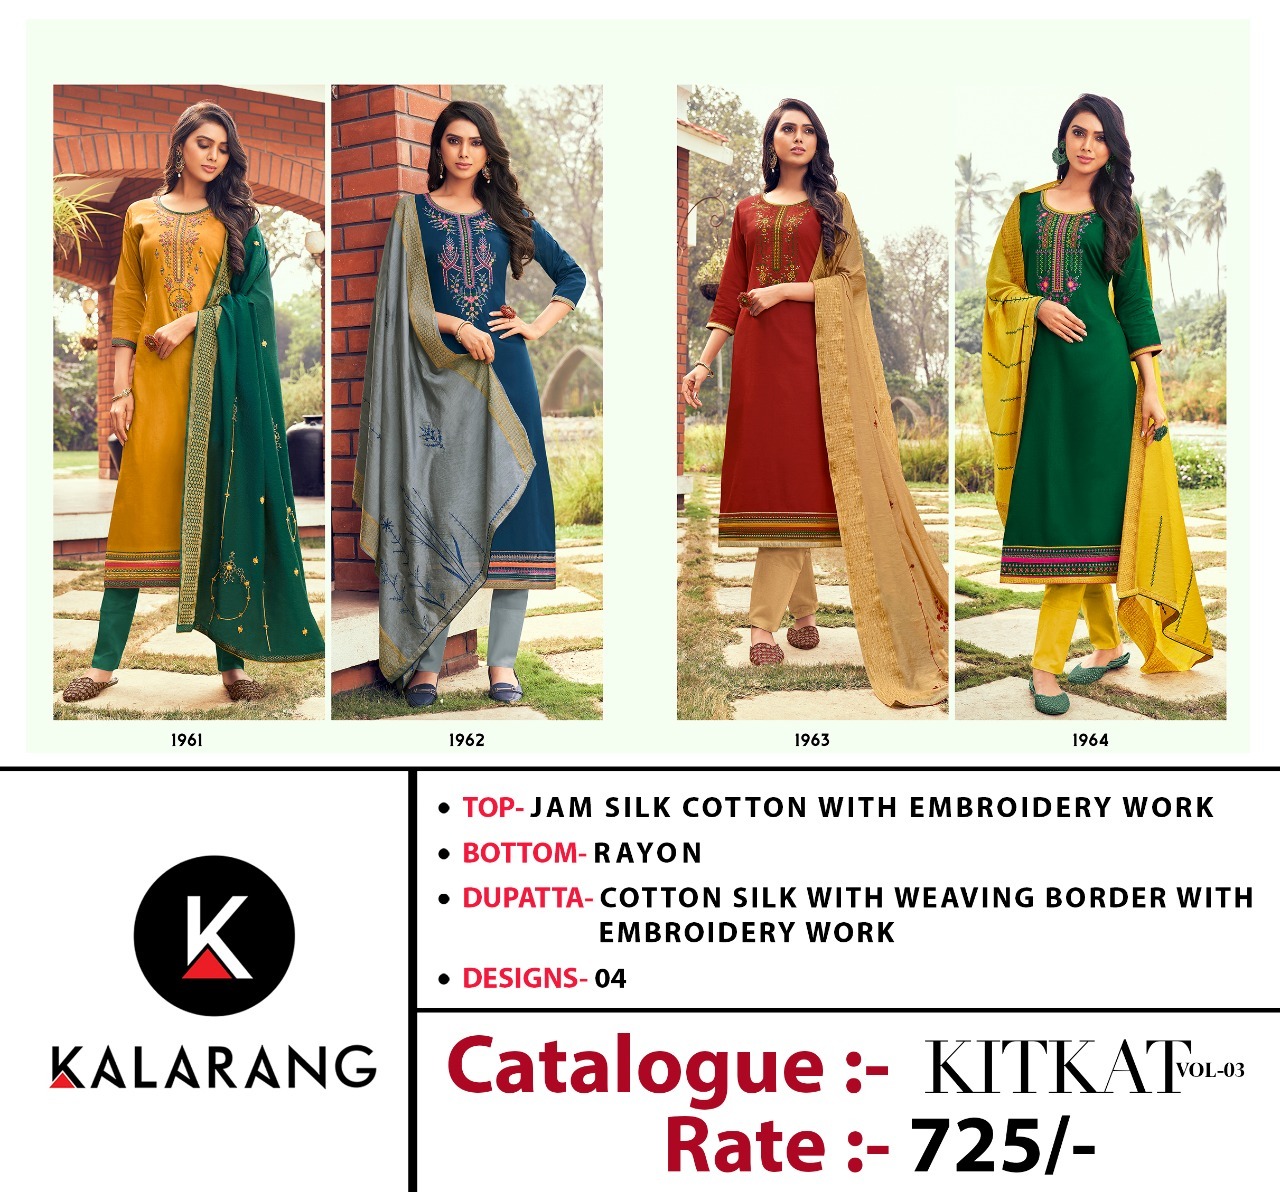 Kalarang Kitkat Vol 3 Jam Silk Cotton With Embroidery Dress Material Catalog